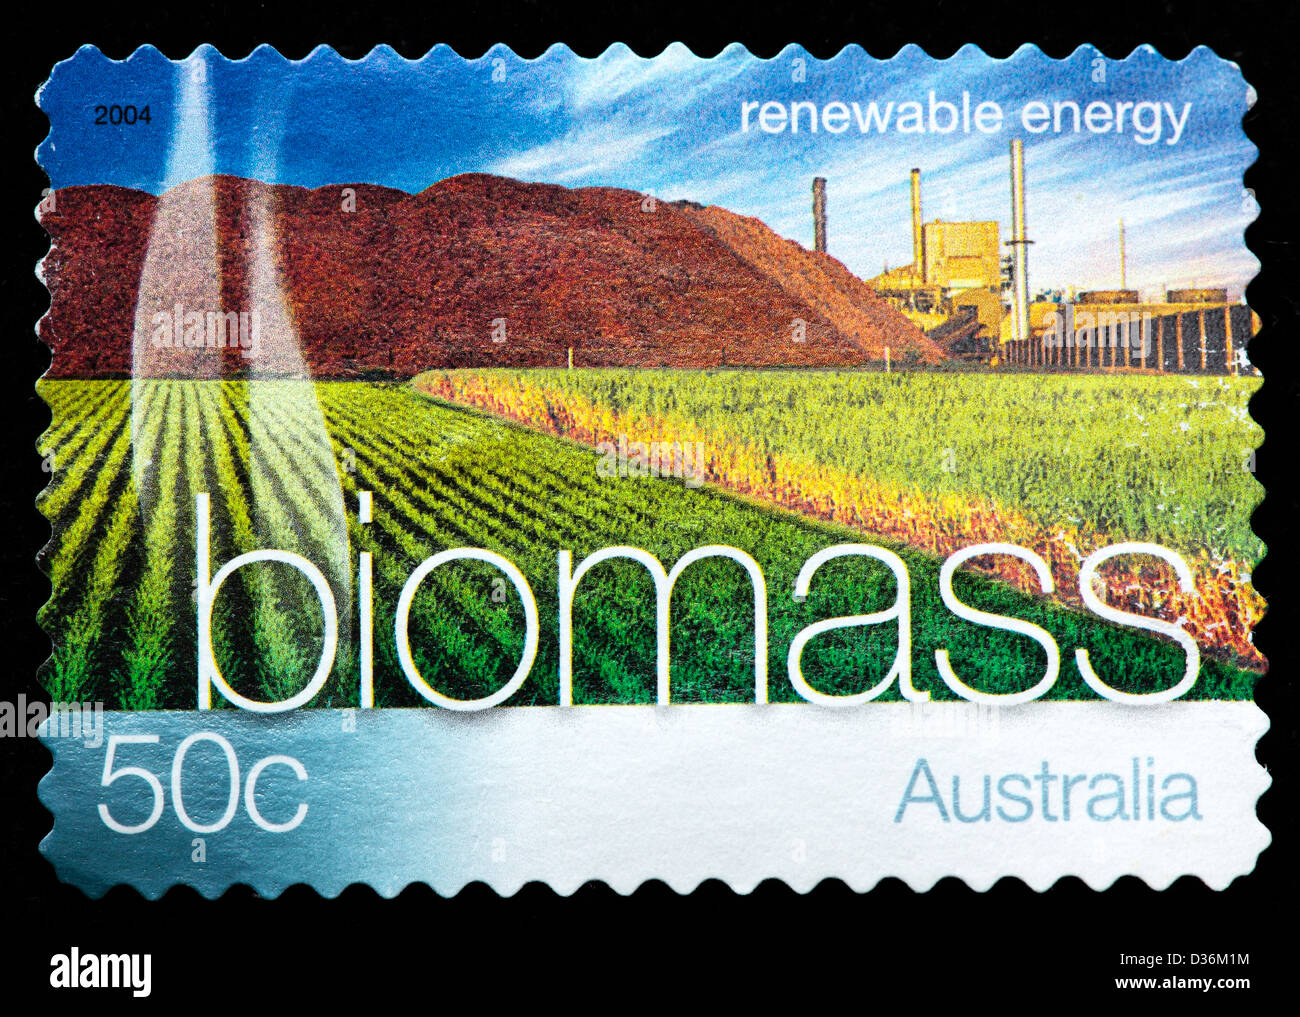 La biomasse, l'énergie renouvelable, timbre-poste, l'Australie, 2004 Banque D'Images